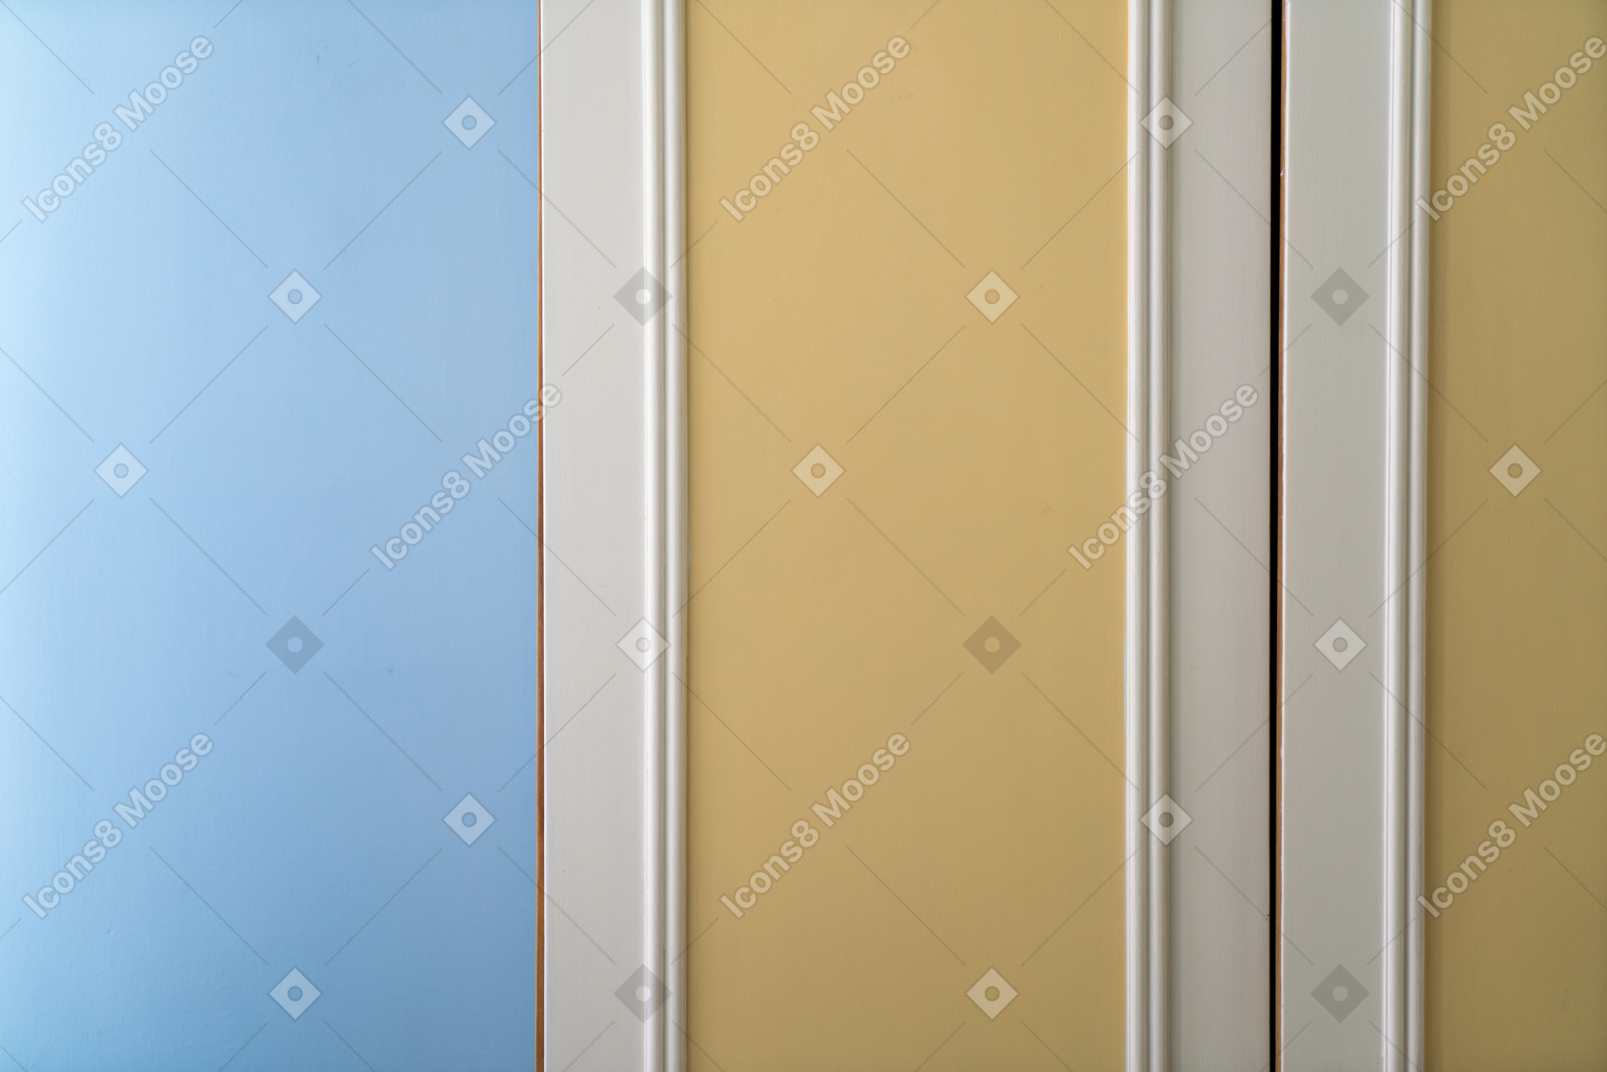 Porta colorata